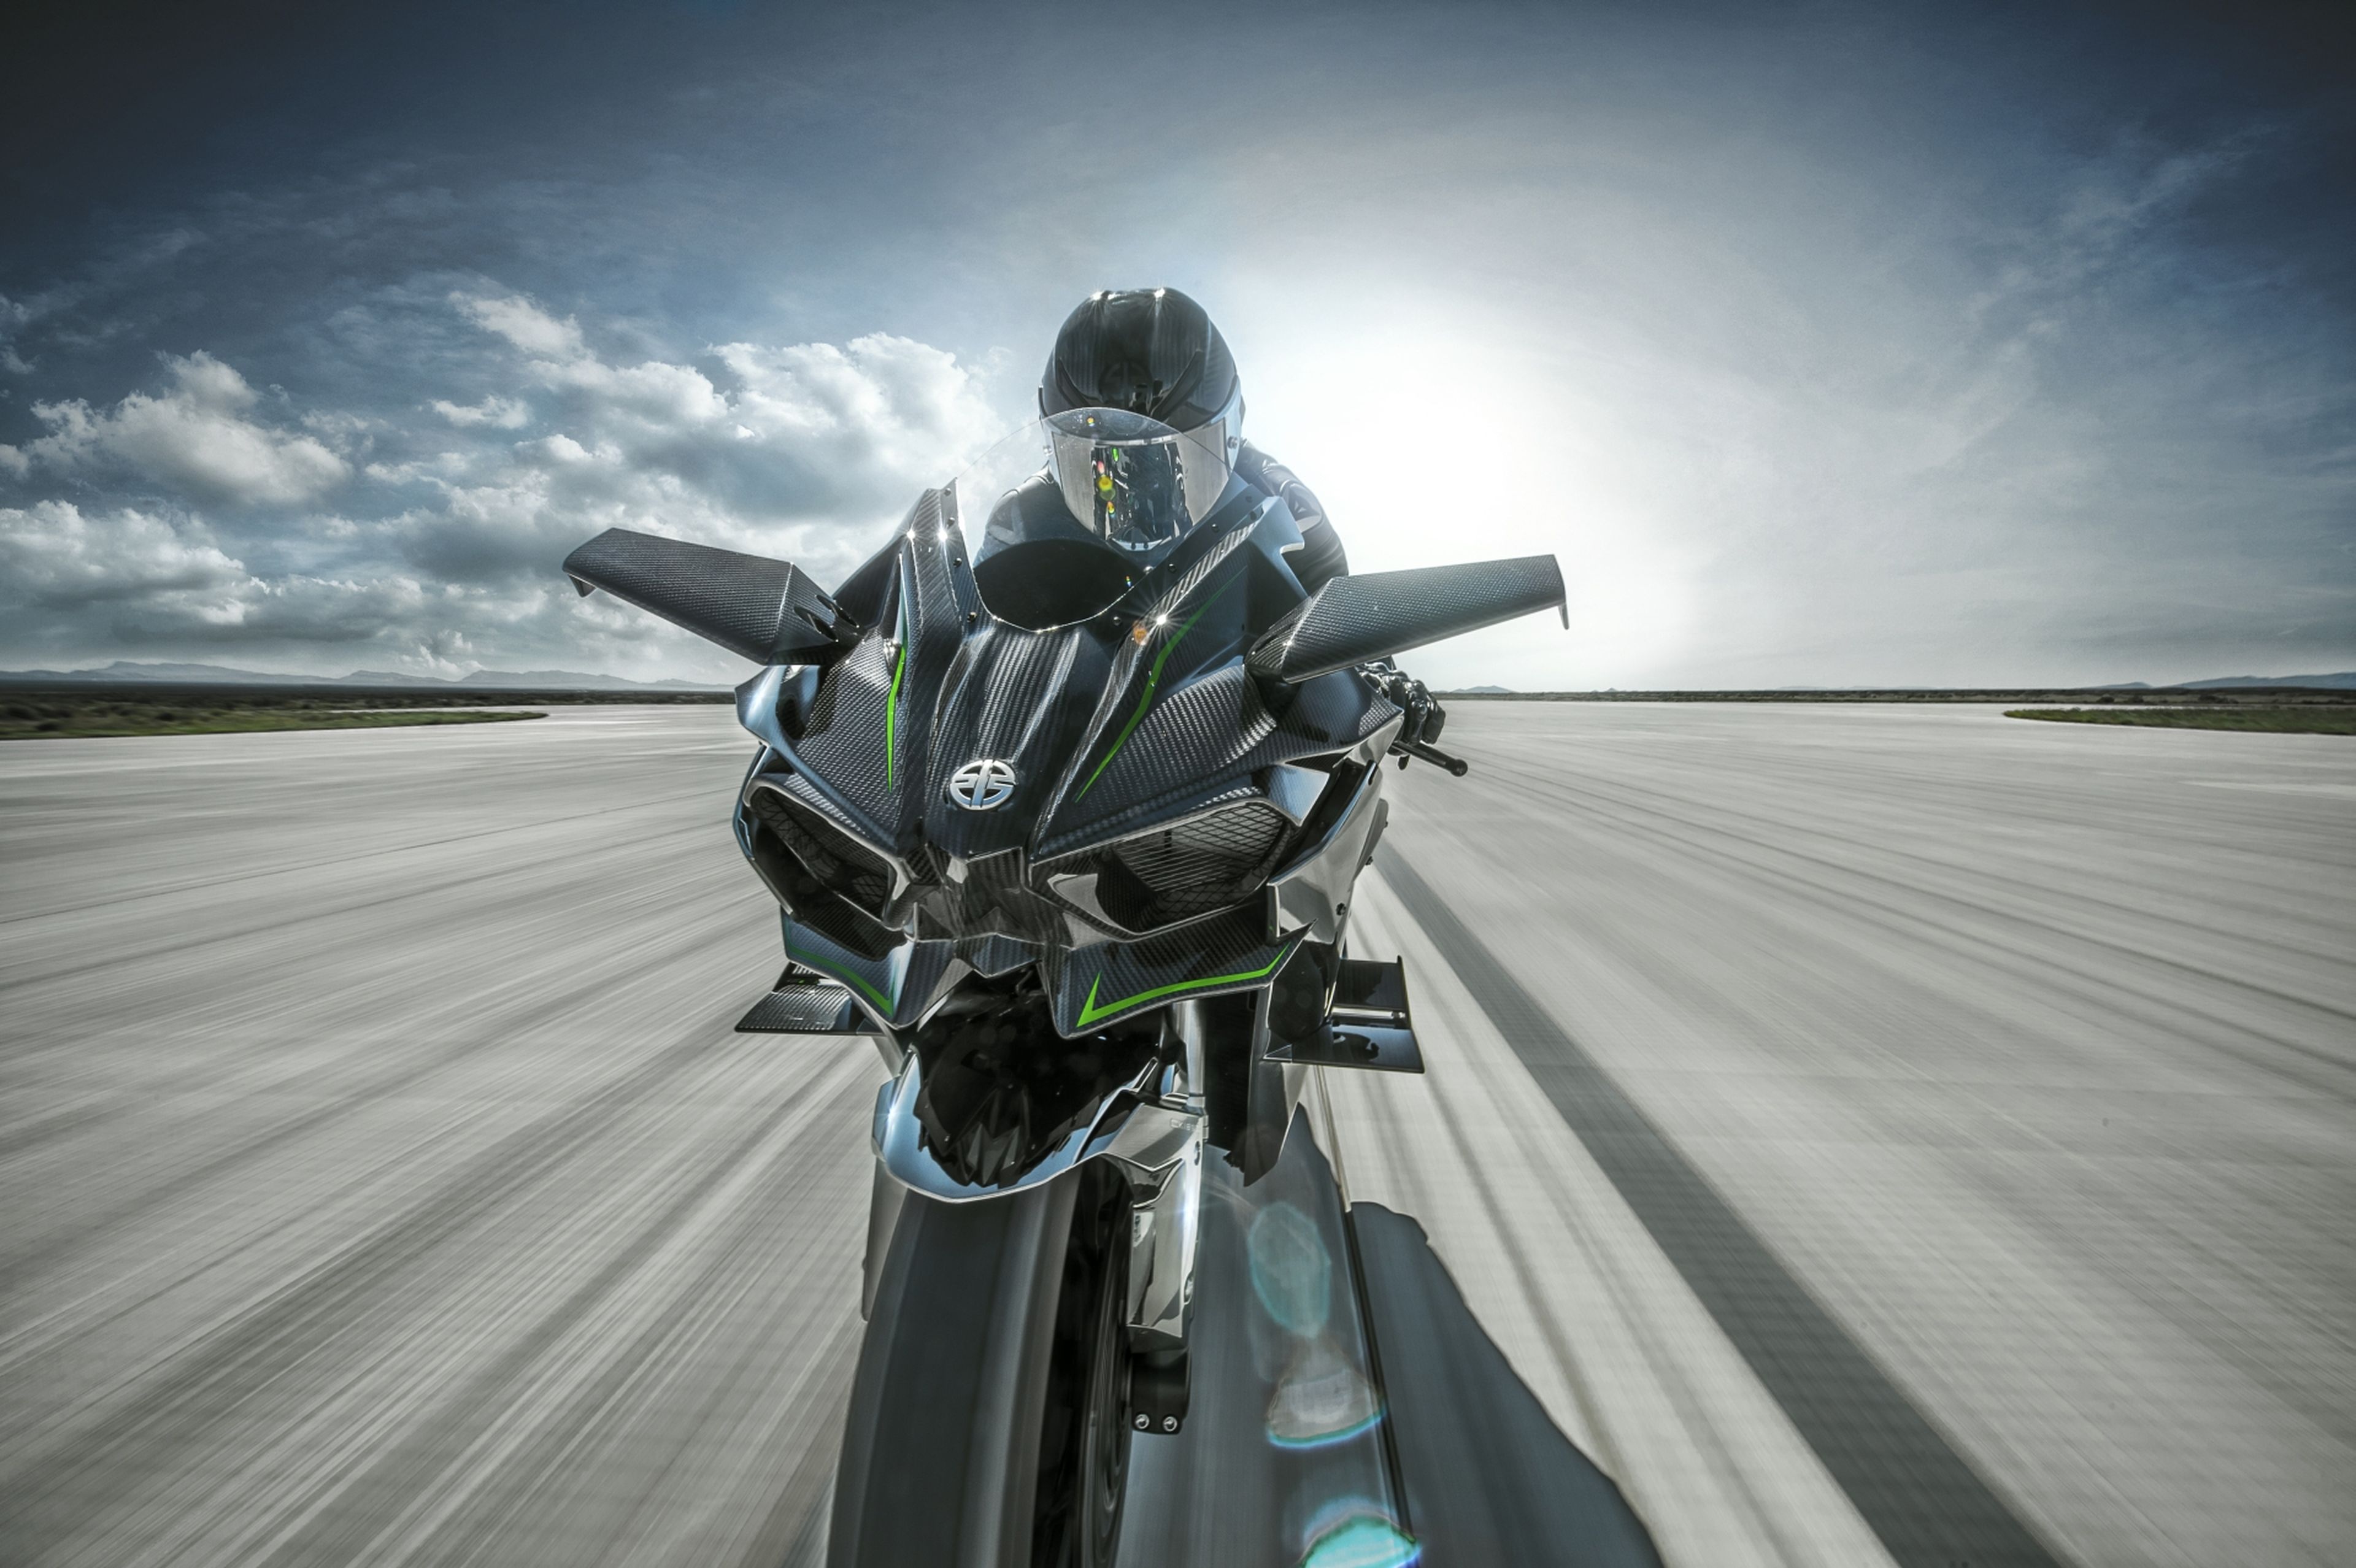 Vídeo: Kenan Sofuoglu pone la Kawasaki H2R a ¡391 km/h!